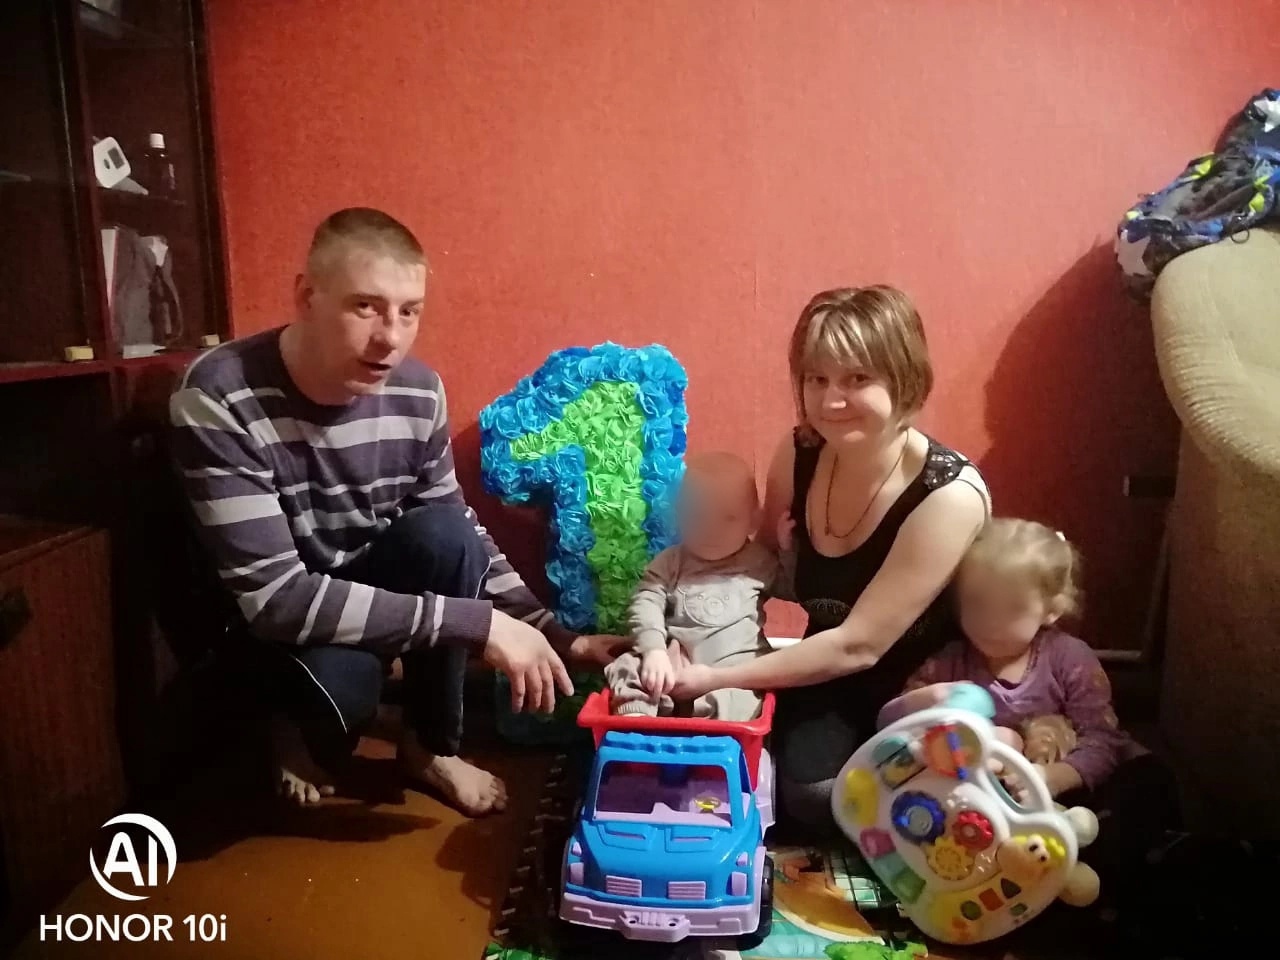 "Как сказать сыну, что папы больше нет?":в Ярославле в аварии разбился многодетный отец